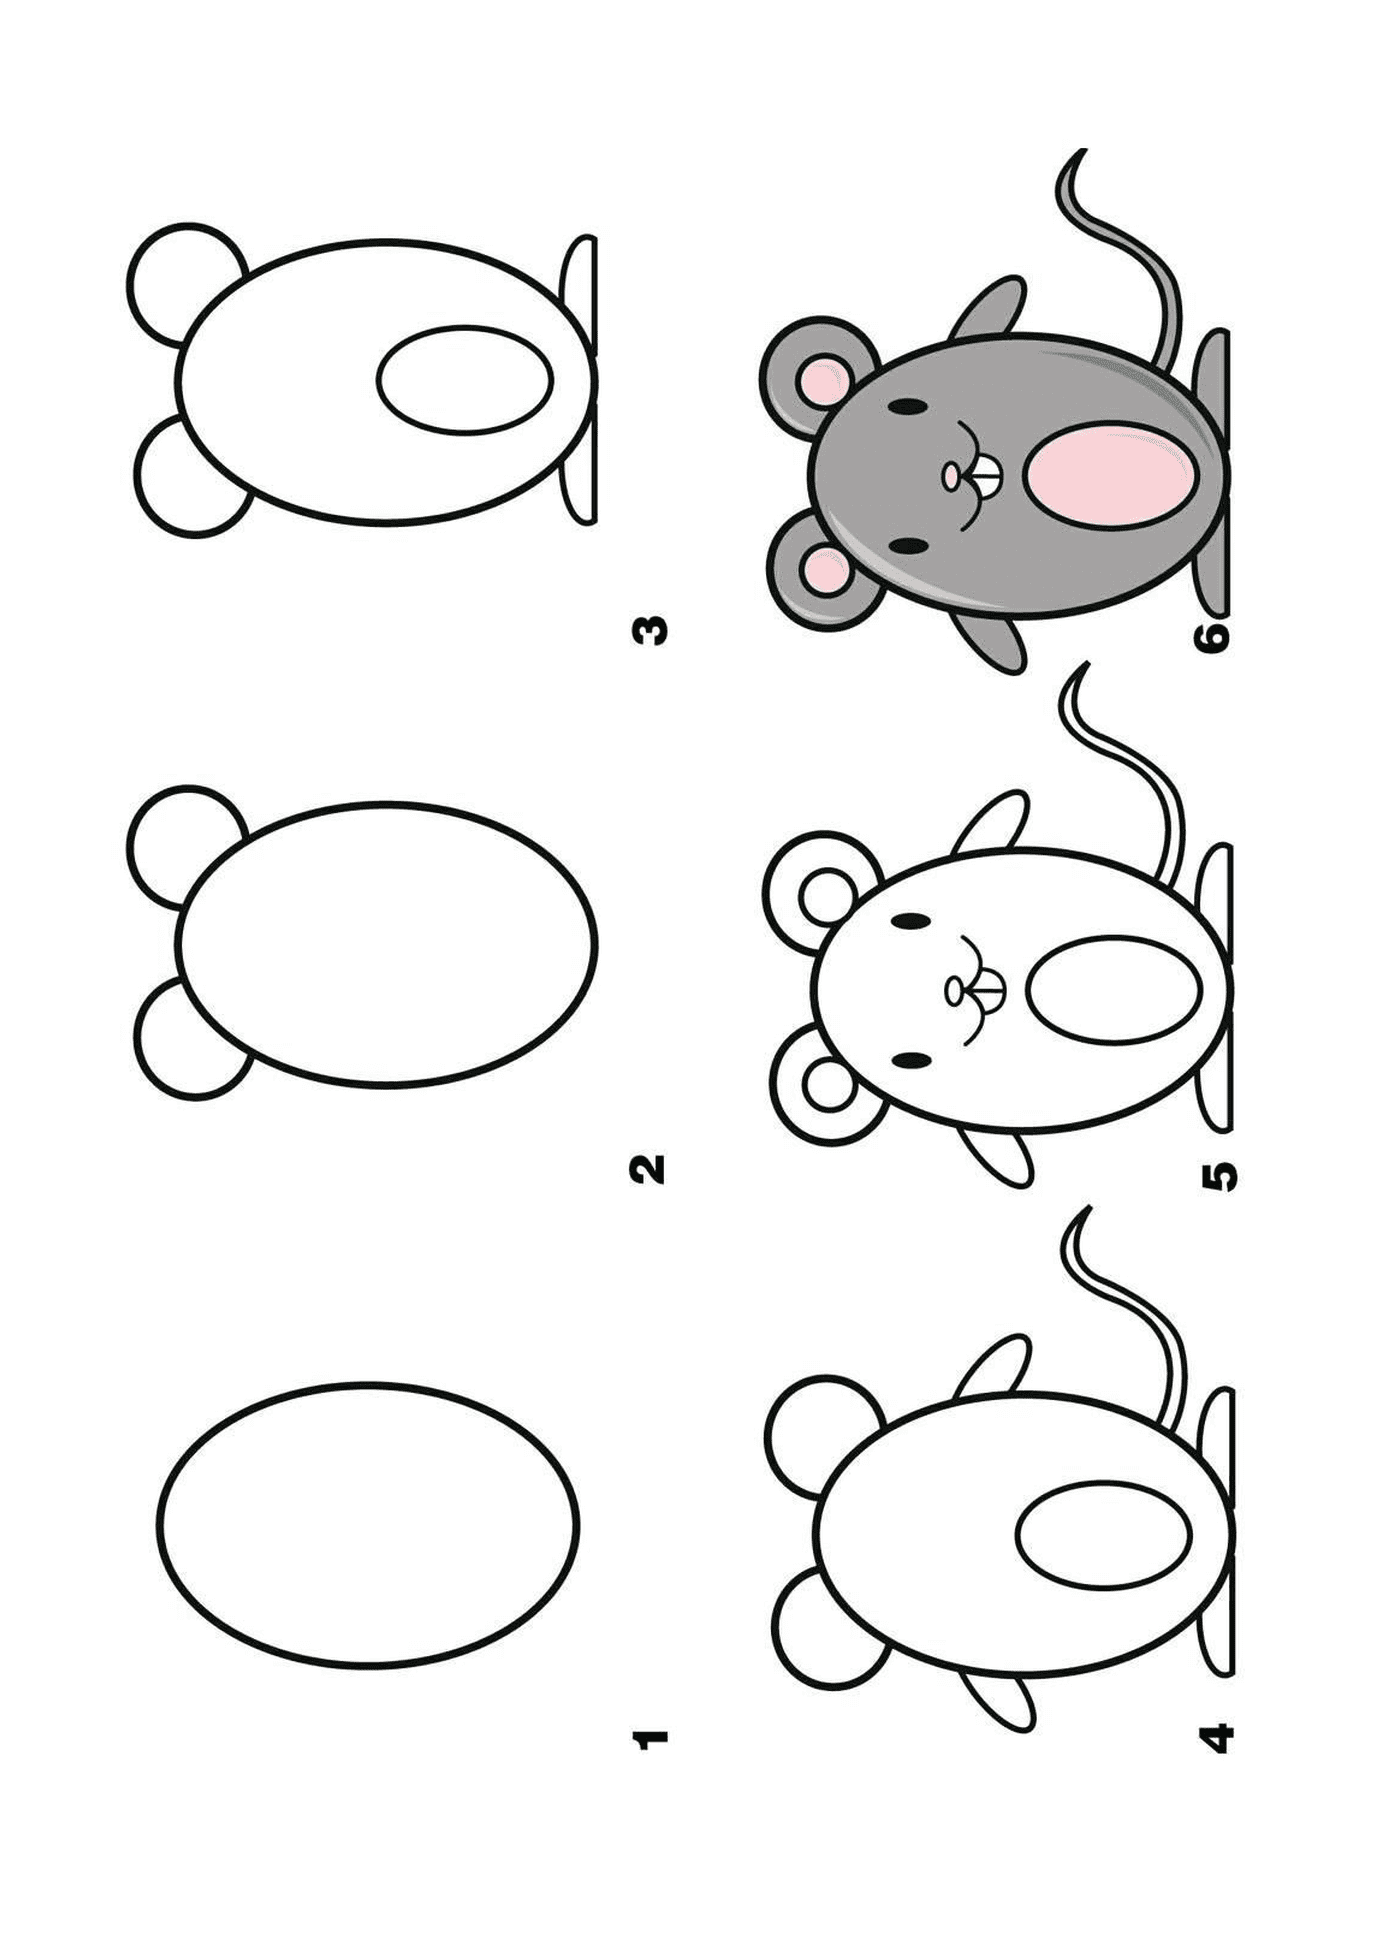  Cómo dibujar un ratón paso a paso 